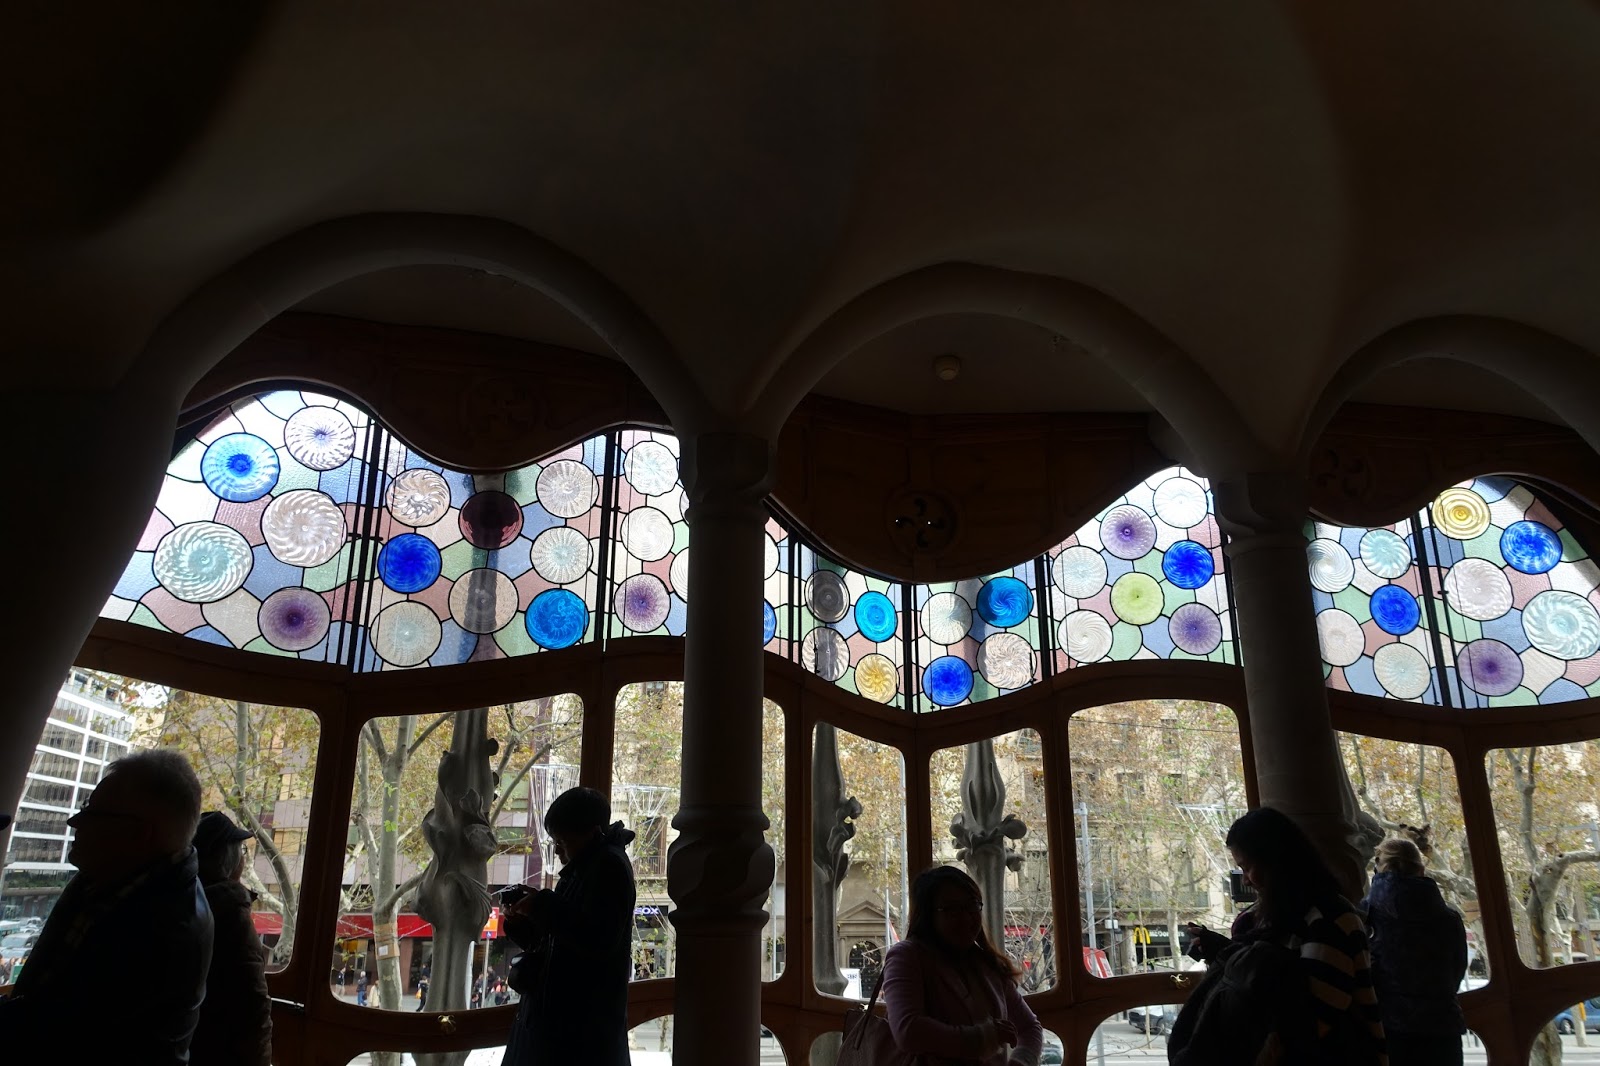 メイン居間の天井窓の色ガラス